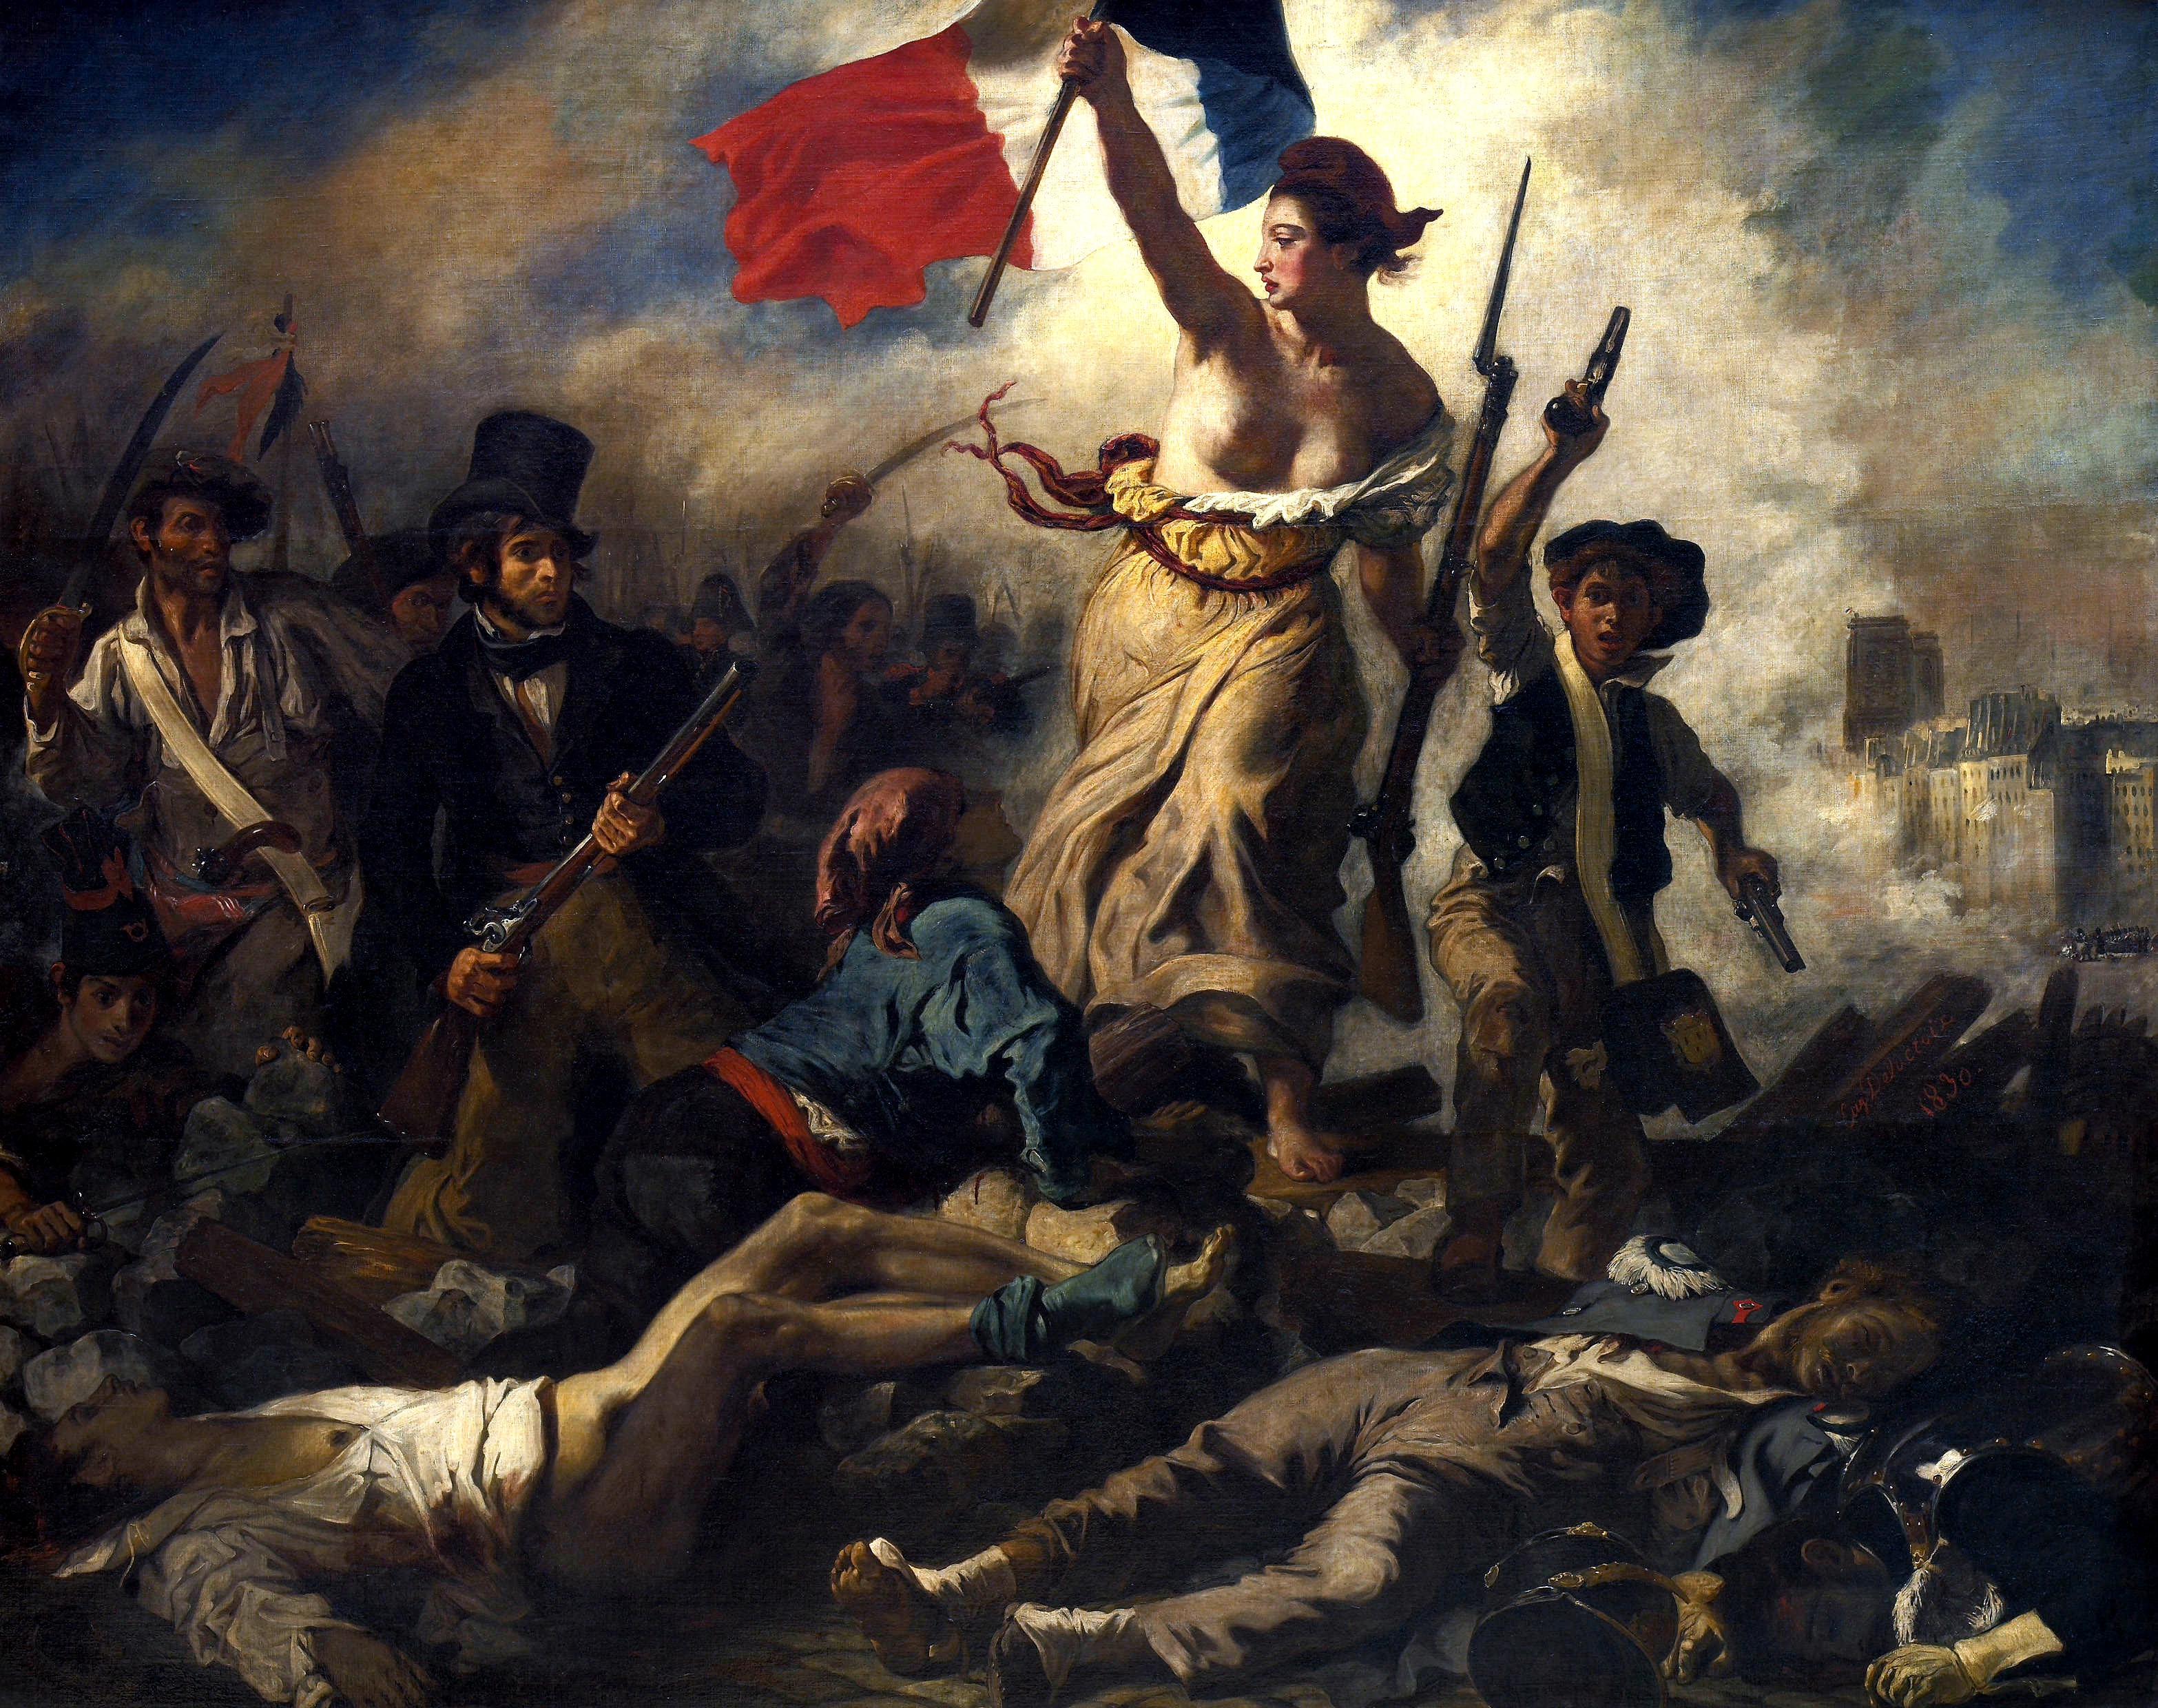 Die Freiheit führt das Volk by Eugène Delacroix - 1830 - 260 x 325 cm Musée du Louvre